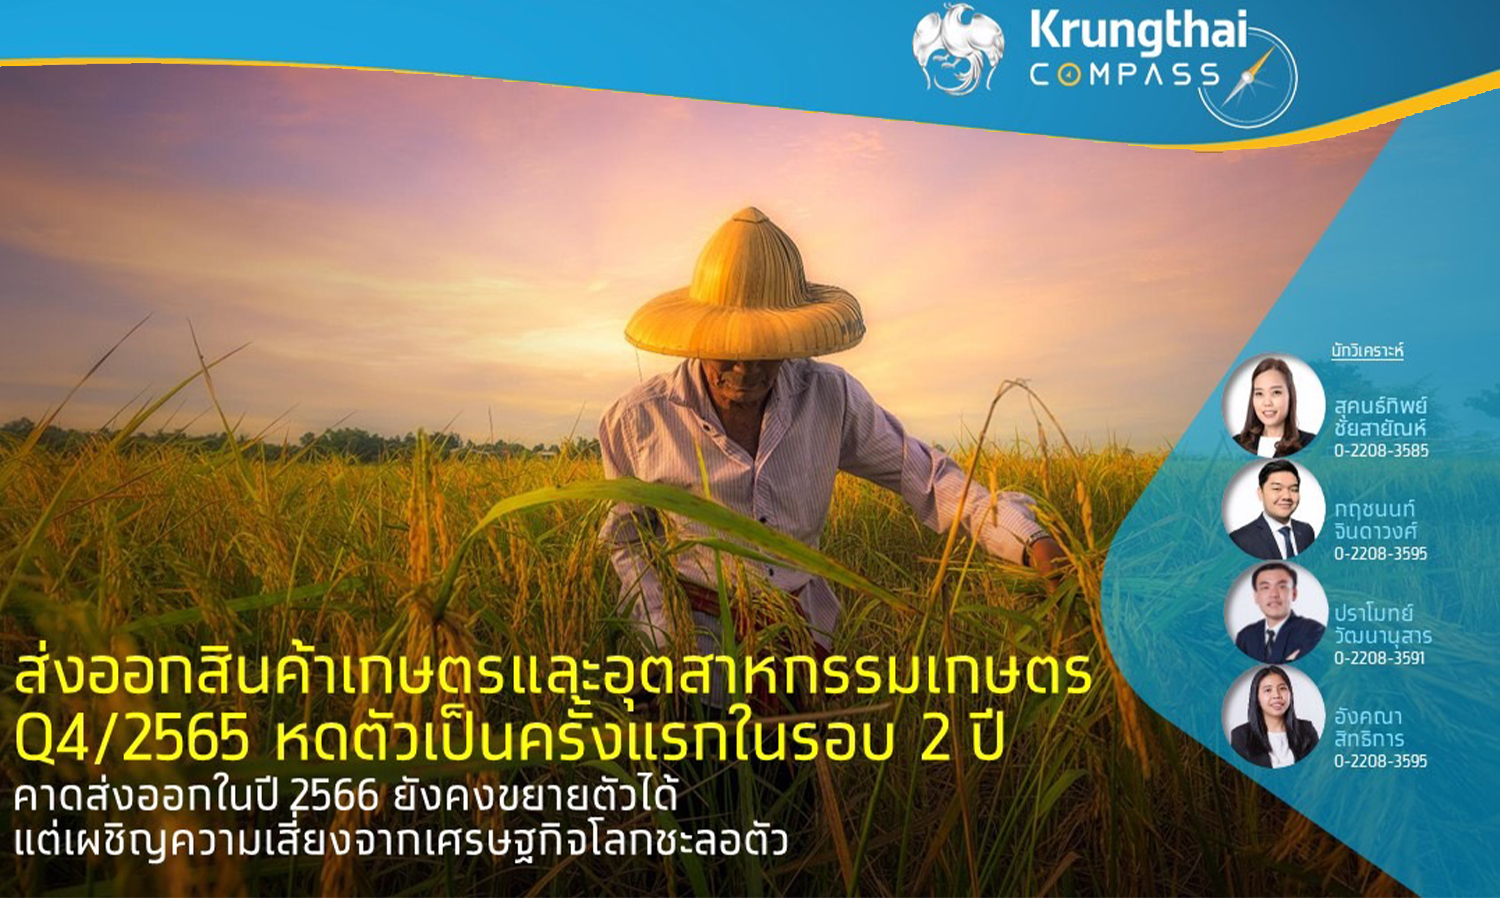 การส่งออกสินค้าเกษตรและอุตสาหกรรมเกษตรในไตรมาส 4 ปี 2565 หดตัวเป็นครั้งแรกในรอบ 2 ปี